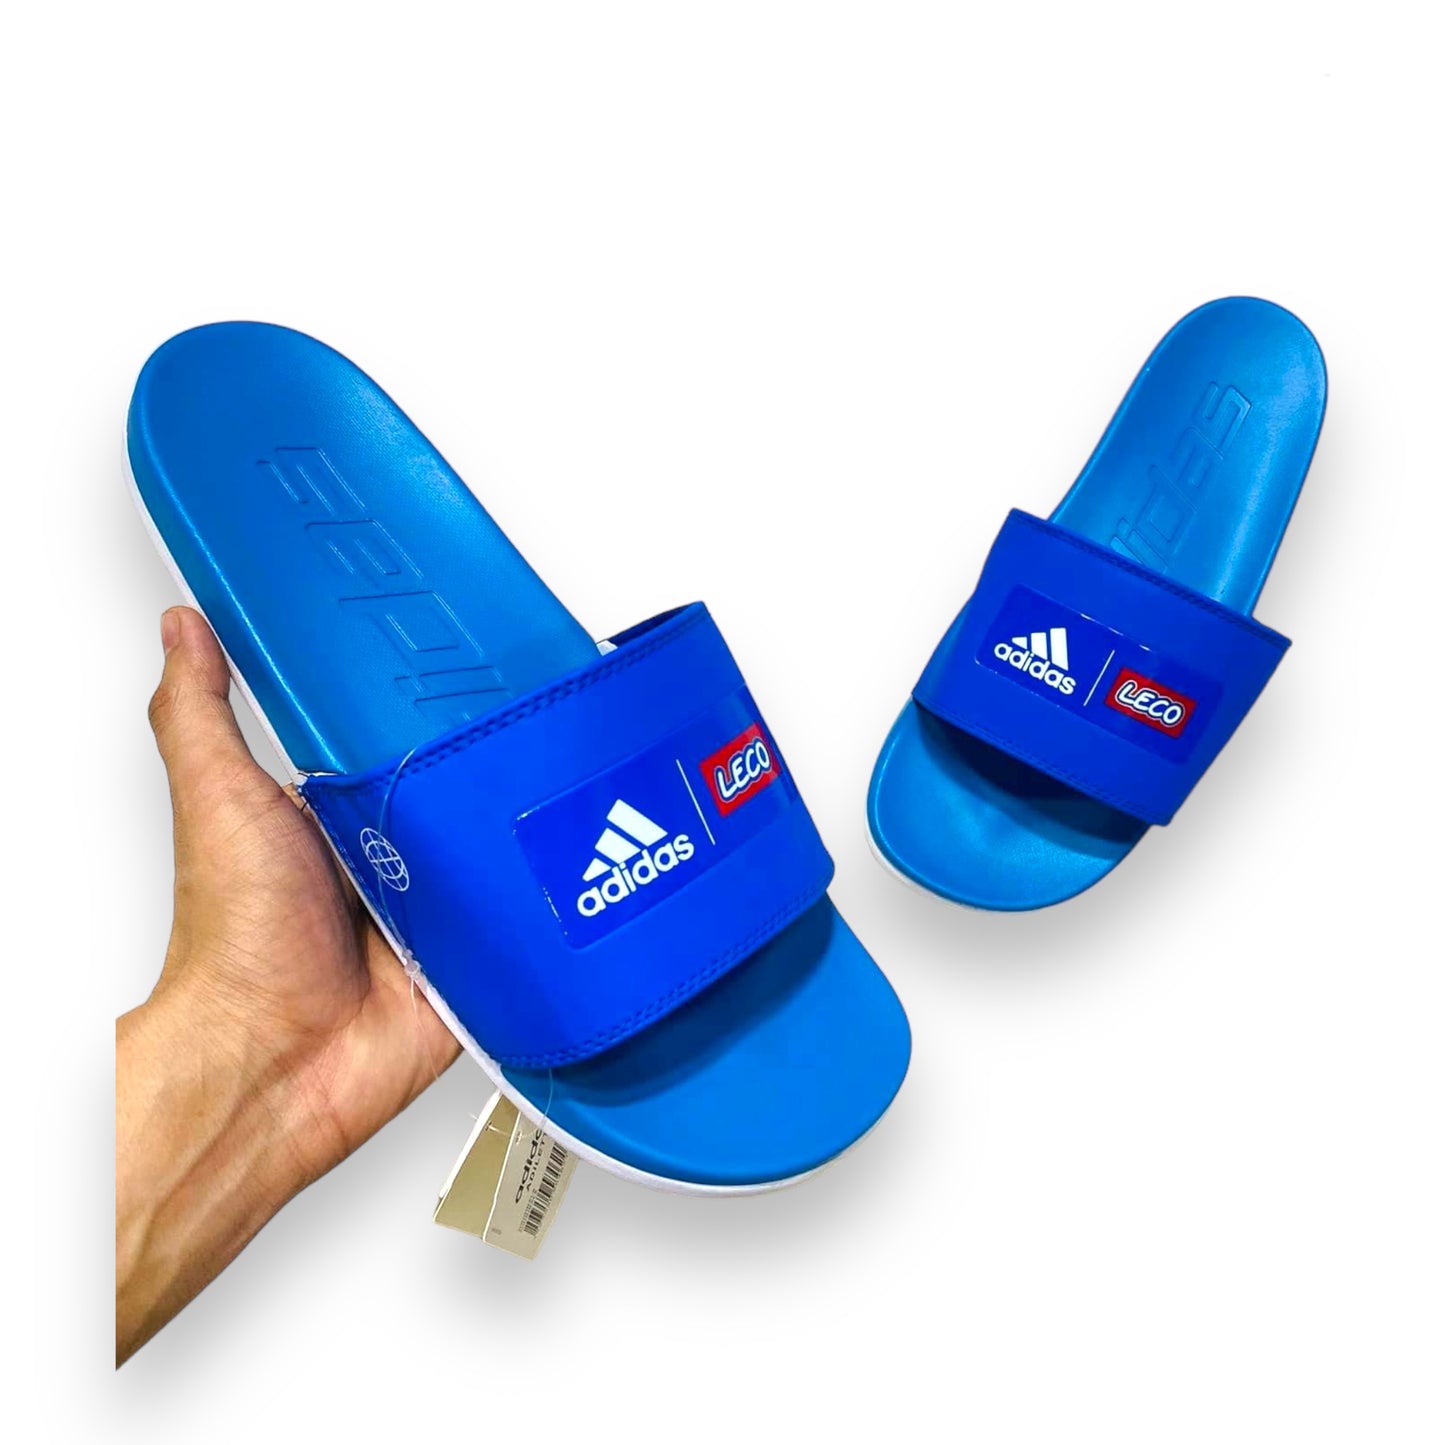 A-D-I-D-A-S Imported Premium Soft Blue Slides